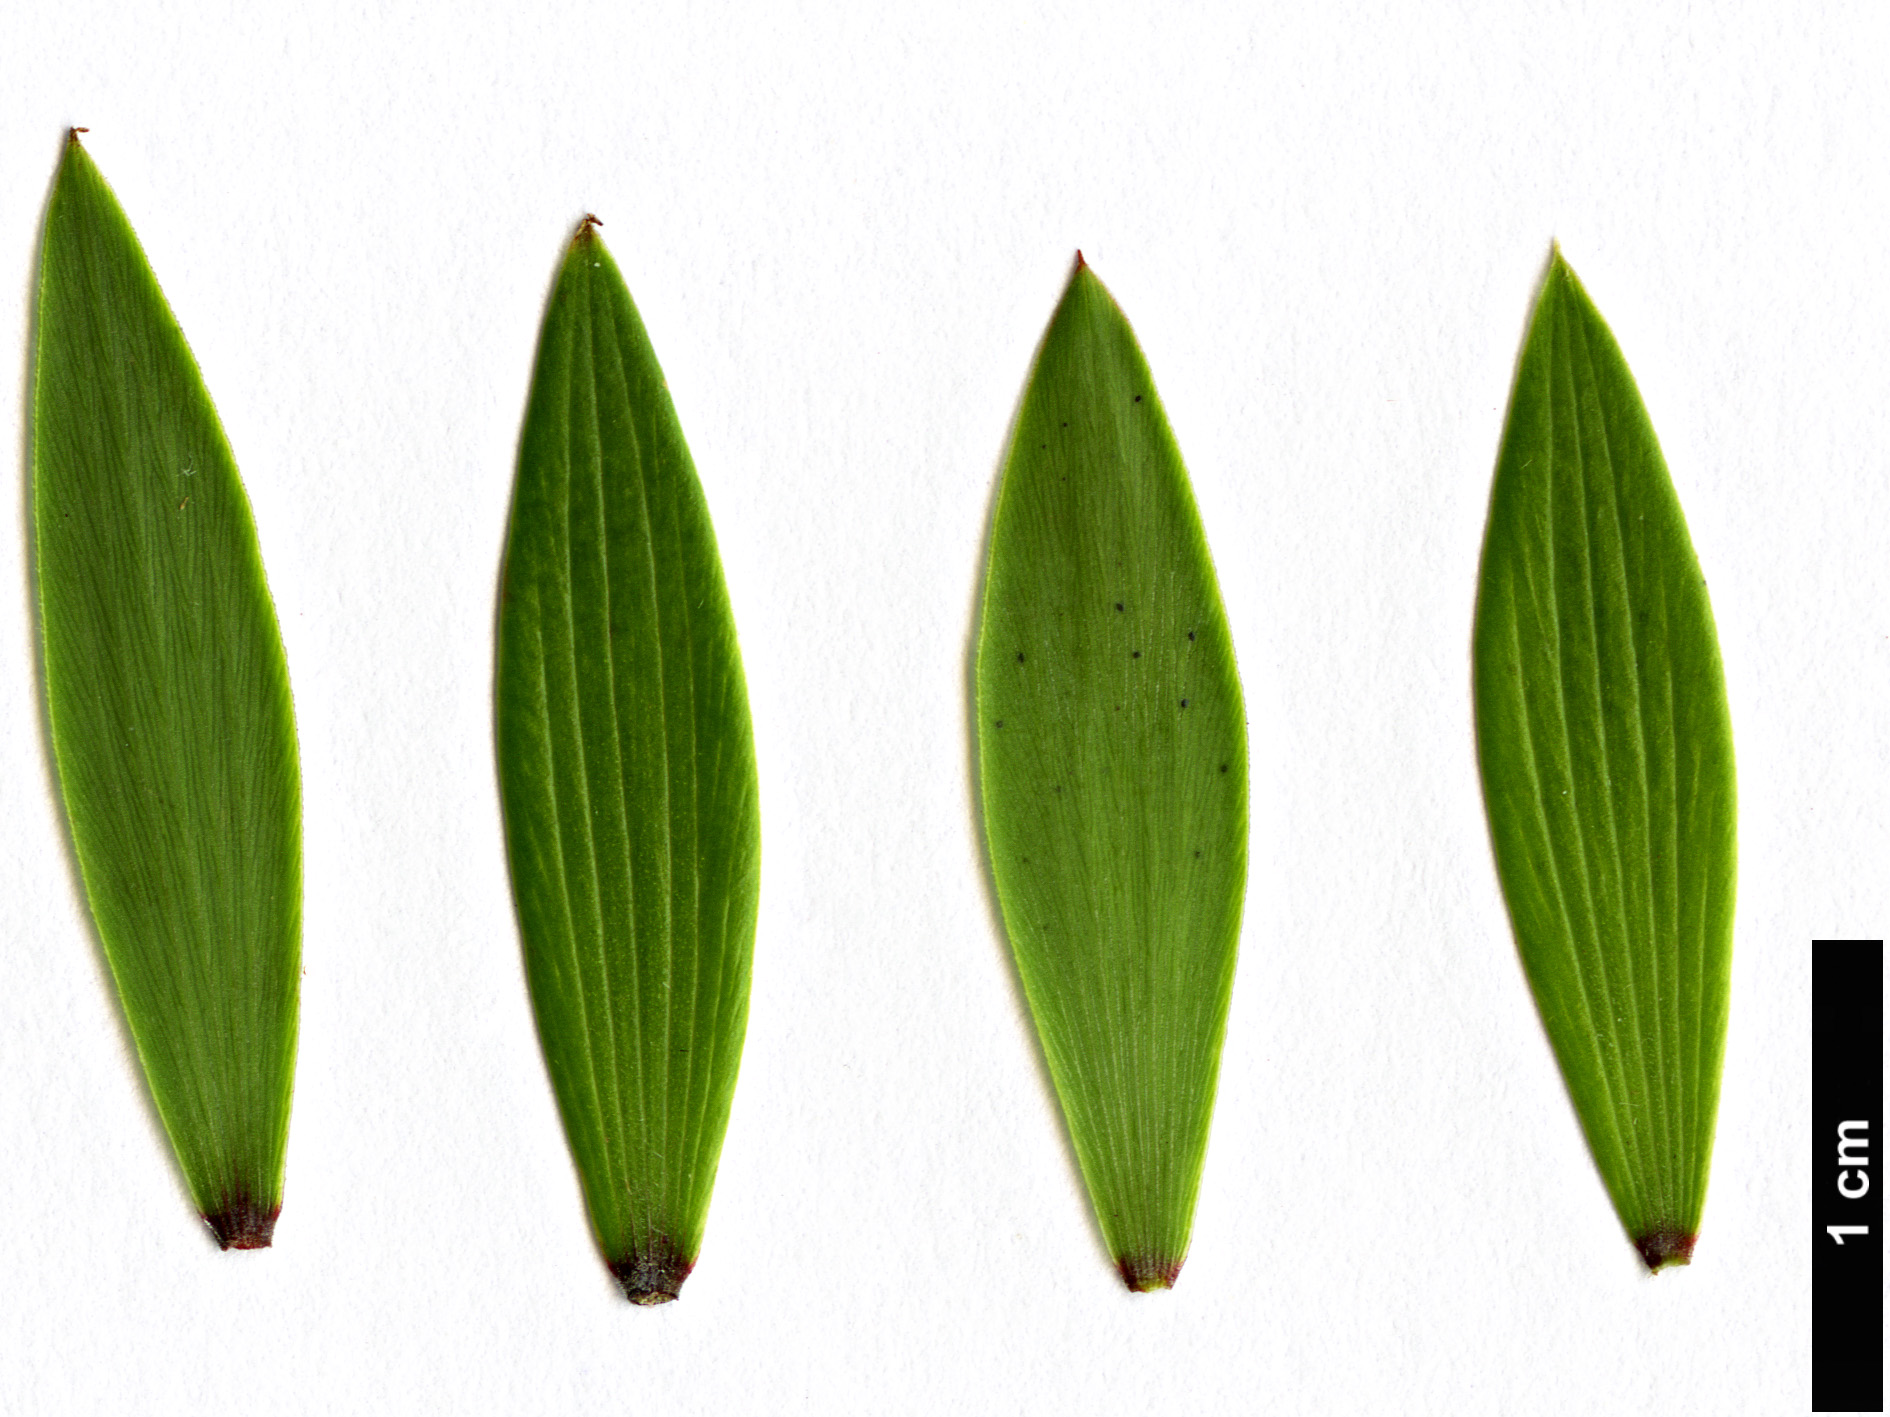 High resolution image: Family: Ericaceae - Genus: Leucopogon - Taxon: fasciculatus